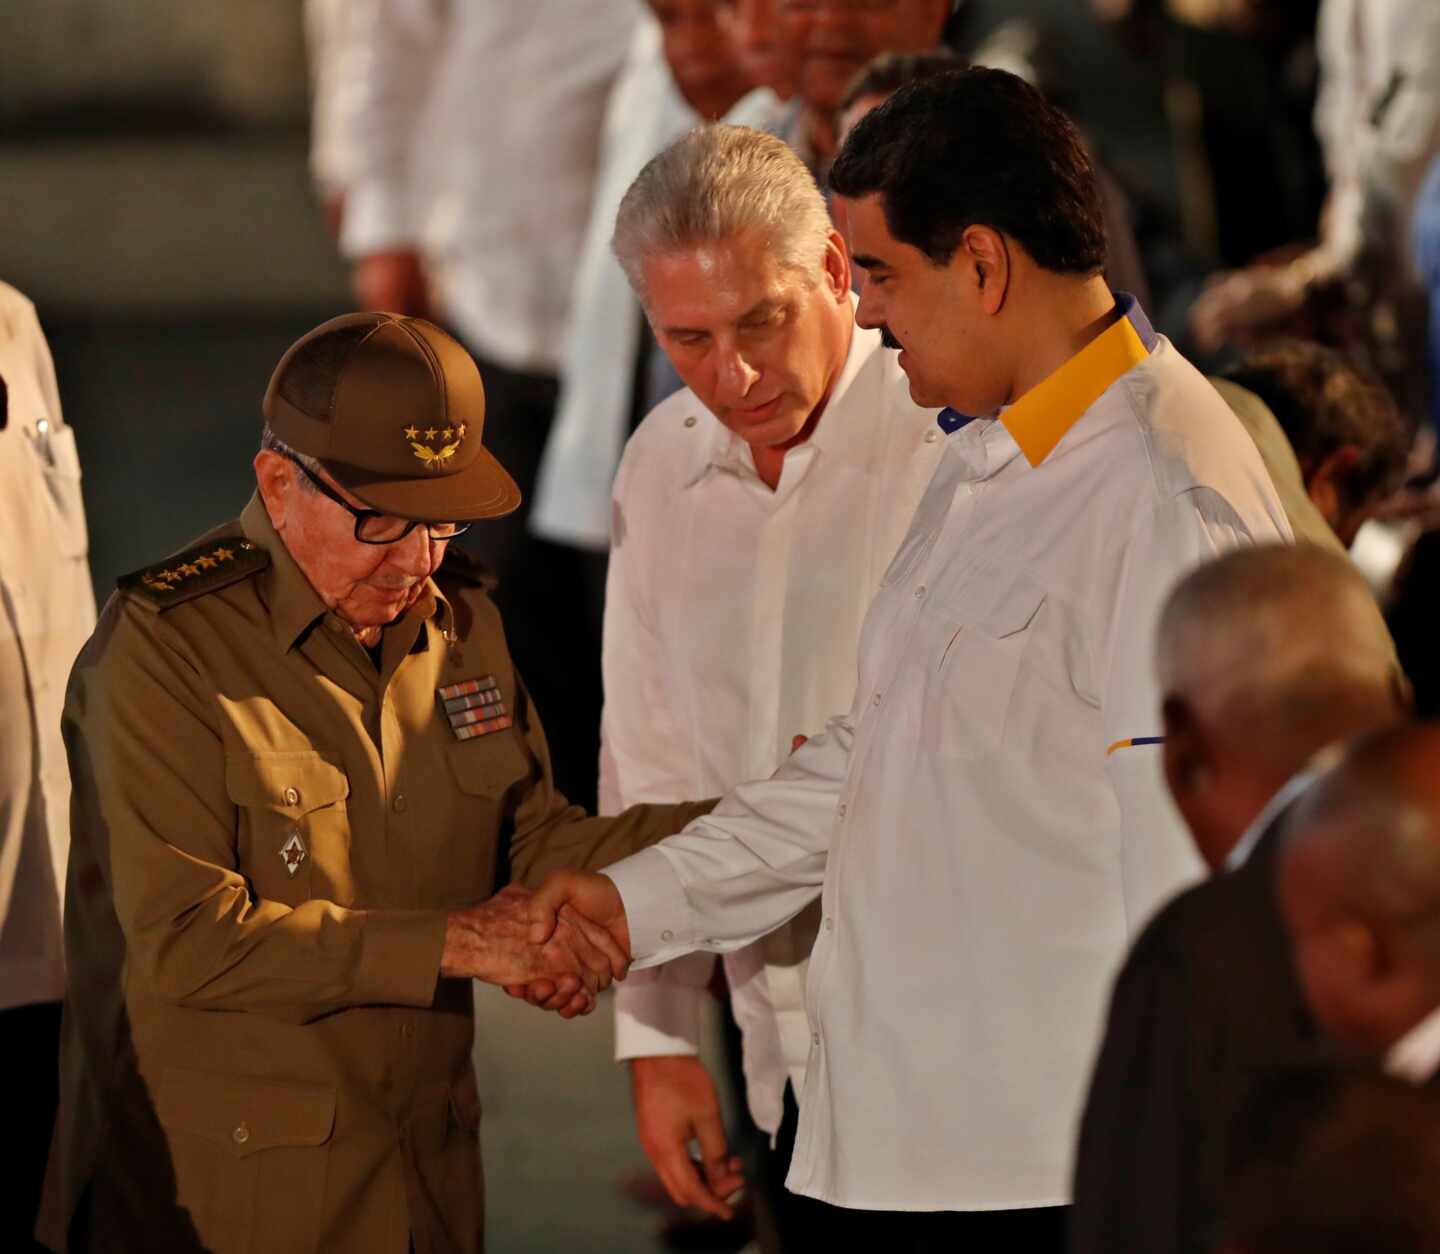 Cuba dirigentes